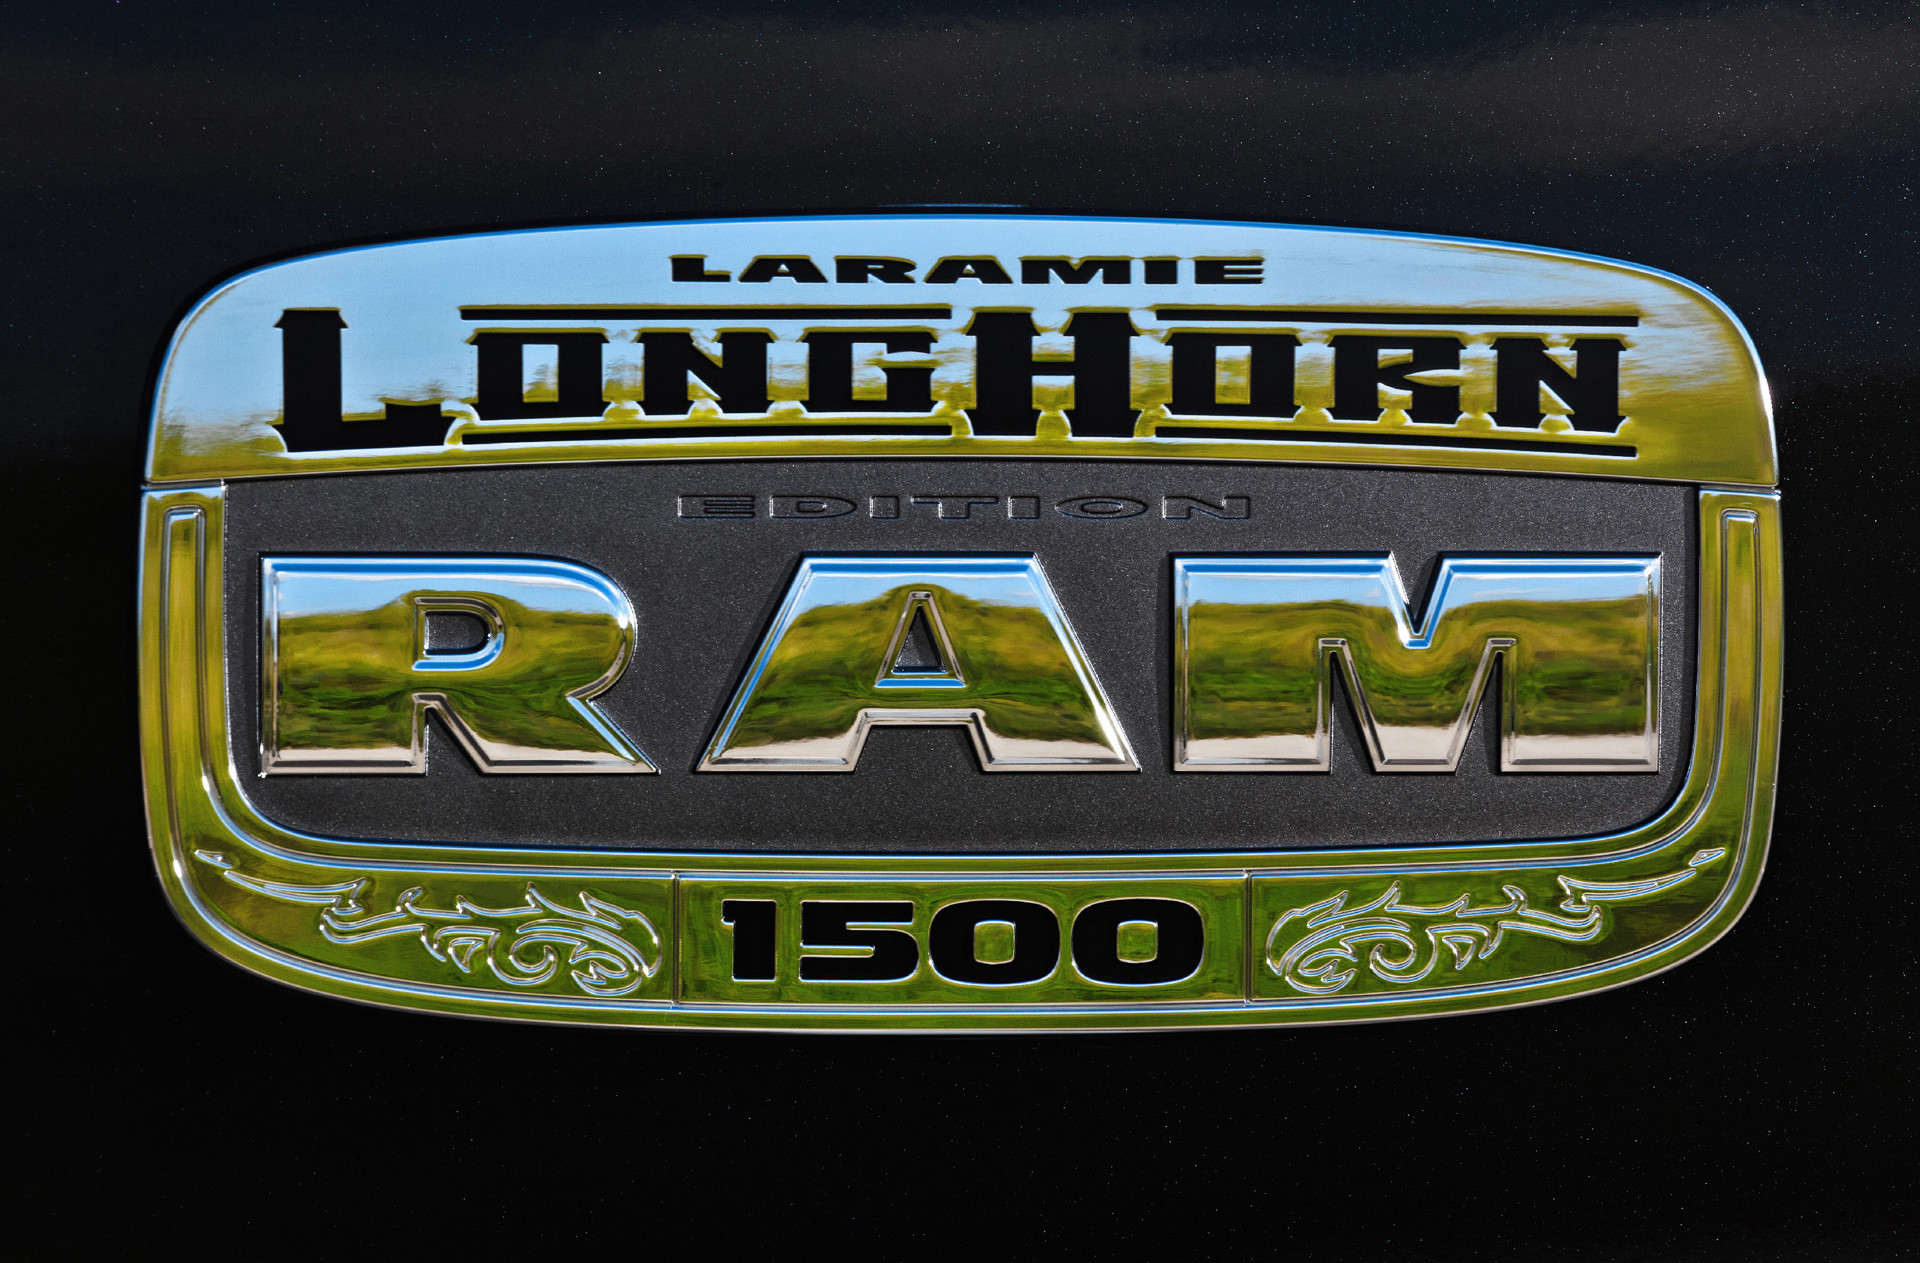 Ram truck logo wallpaper hd.